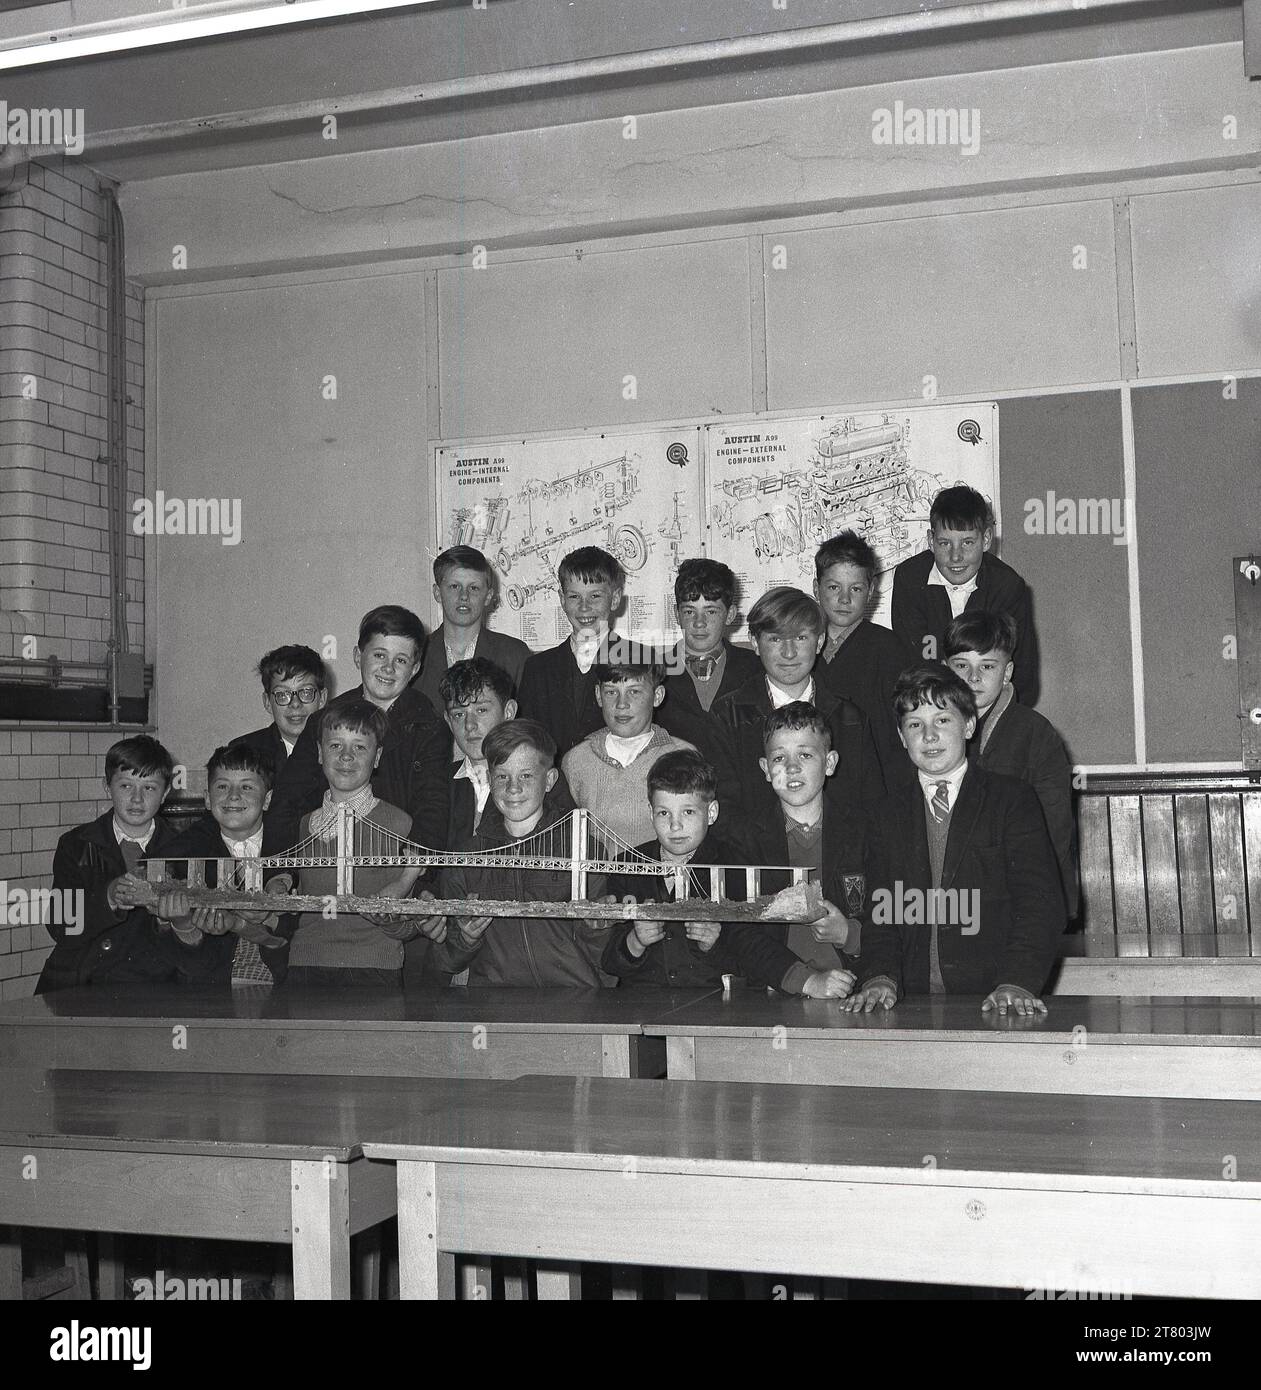 1965, Historical, versammelte sich eine Gruppe von Schülern in einem Klassenzimmer für ein Foto, das ihr Modell der Forth Road Bridge in Fife, Schottland, Großbritannien zeigte. Als die Hängebrücke 1964 eröffnet wurde, war sie die längste Hängebrücke der Welt. Hinter den Jungs, an der Wand, Diagramme für den Motor eines Austin A99, ein beliebtes Auto der damaligen Zeit. Stockfoto